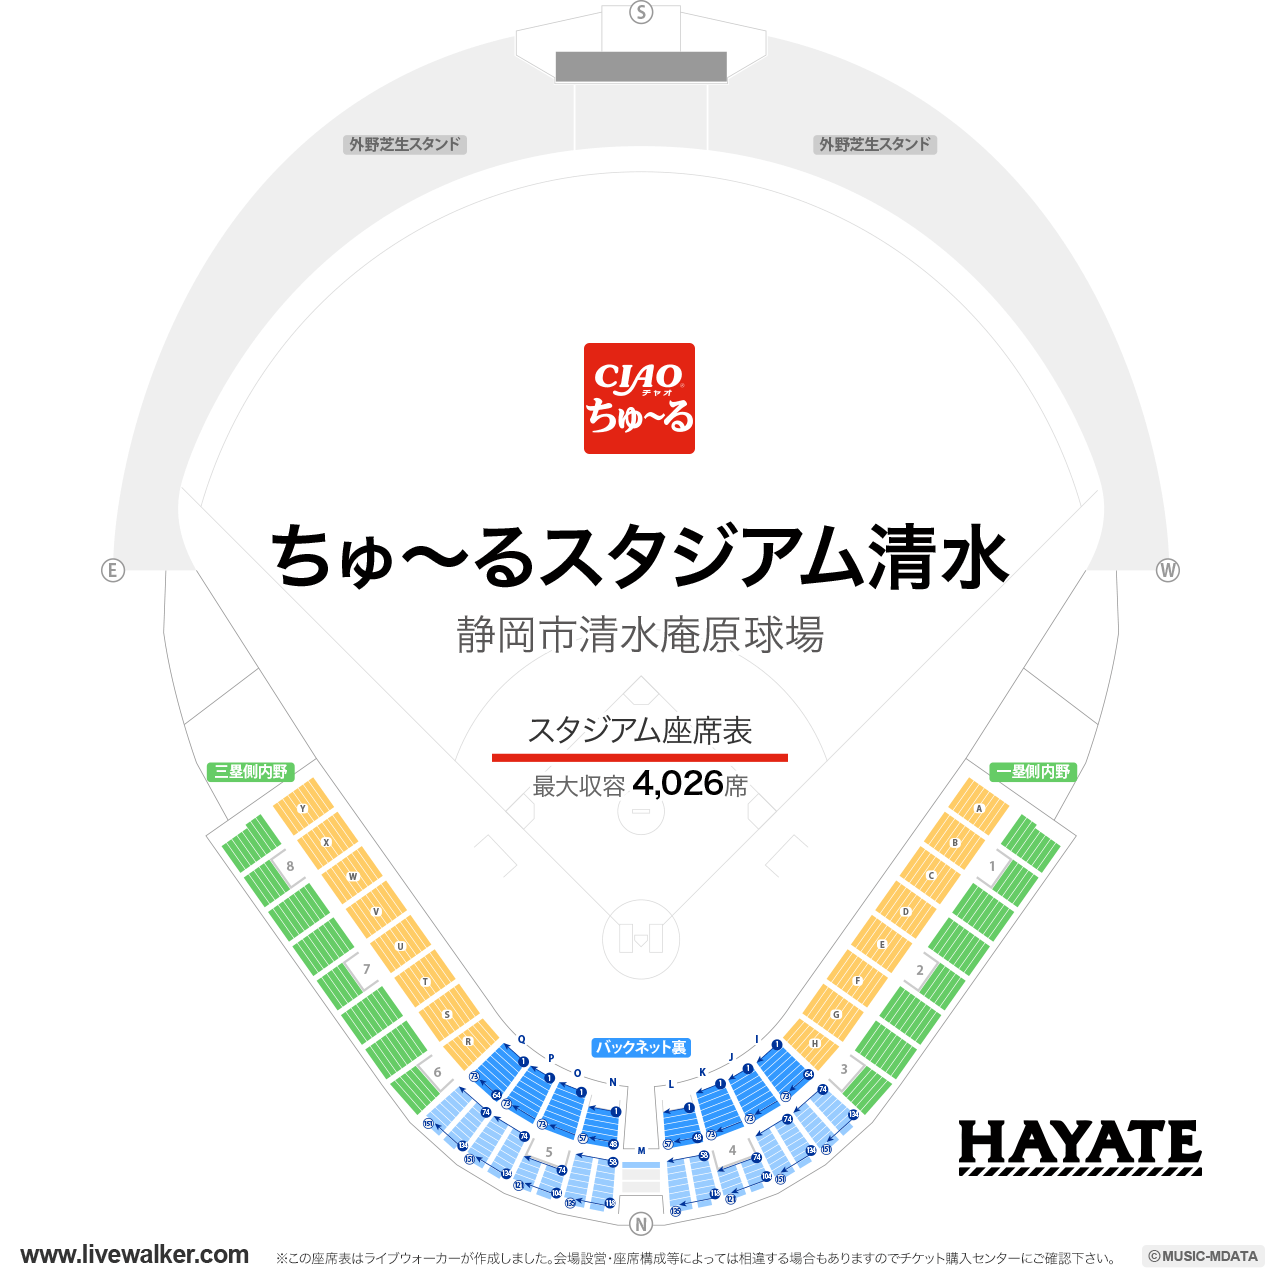 ちゅ〜るスタジアム清水の座席表